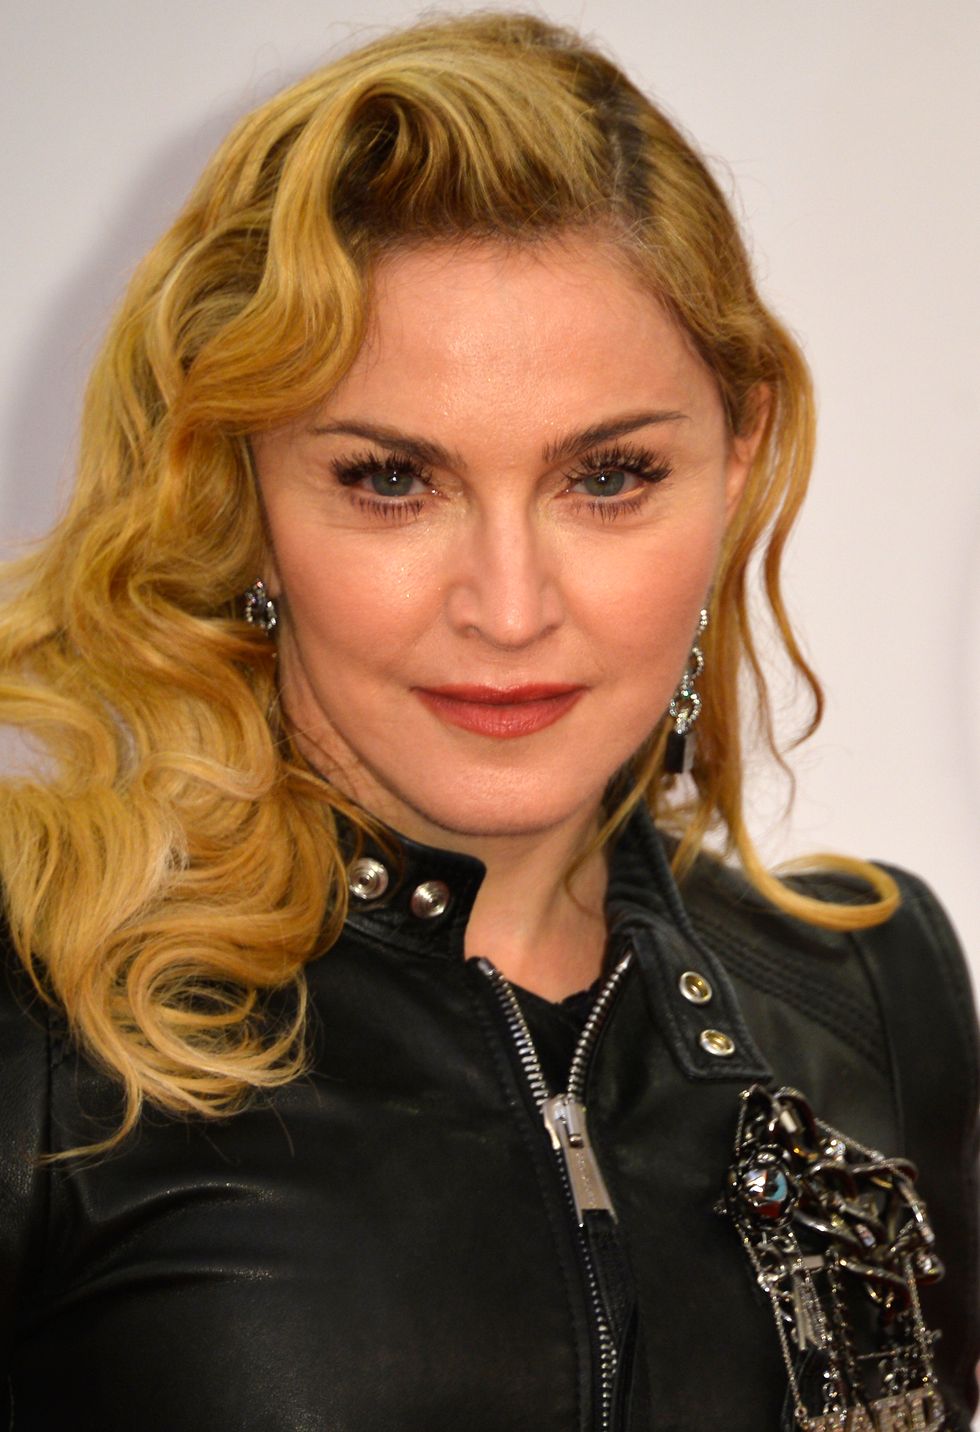 Madonna lascia il toy boy per tornare con Sean Penn?